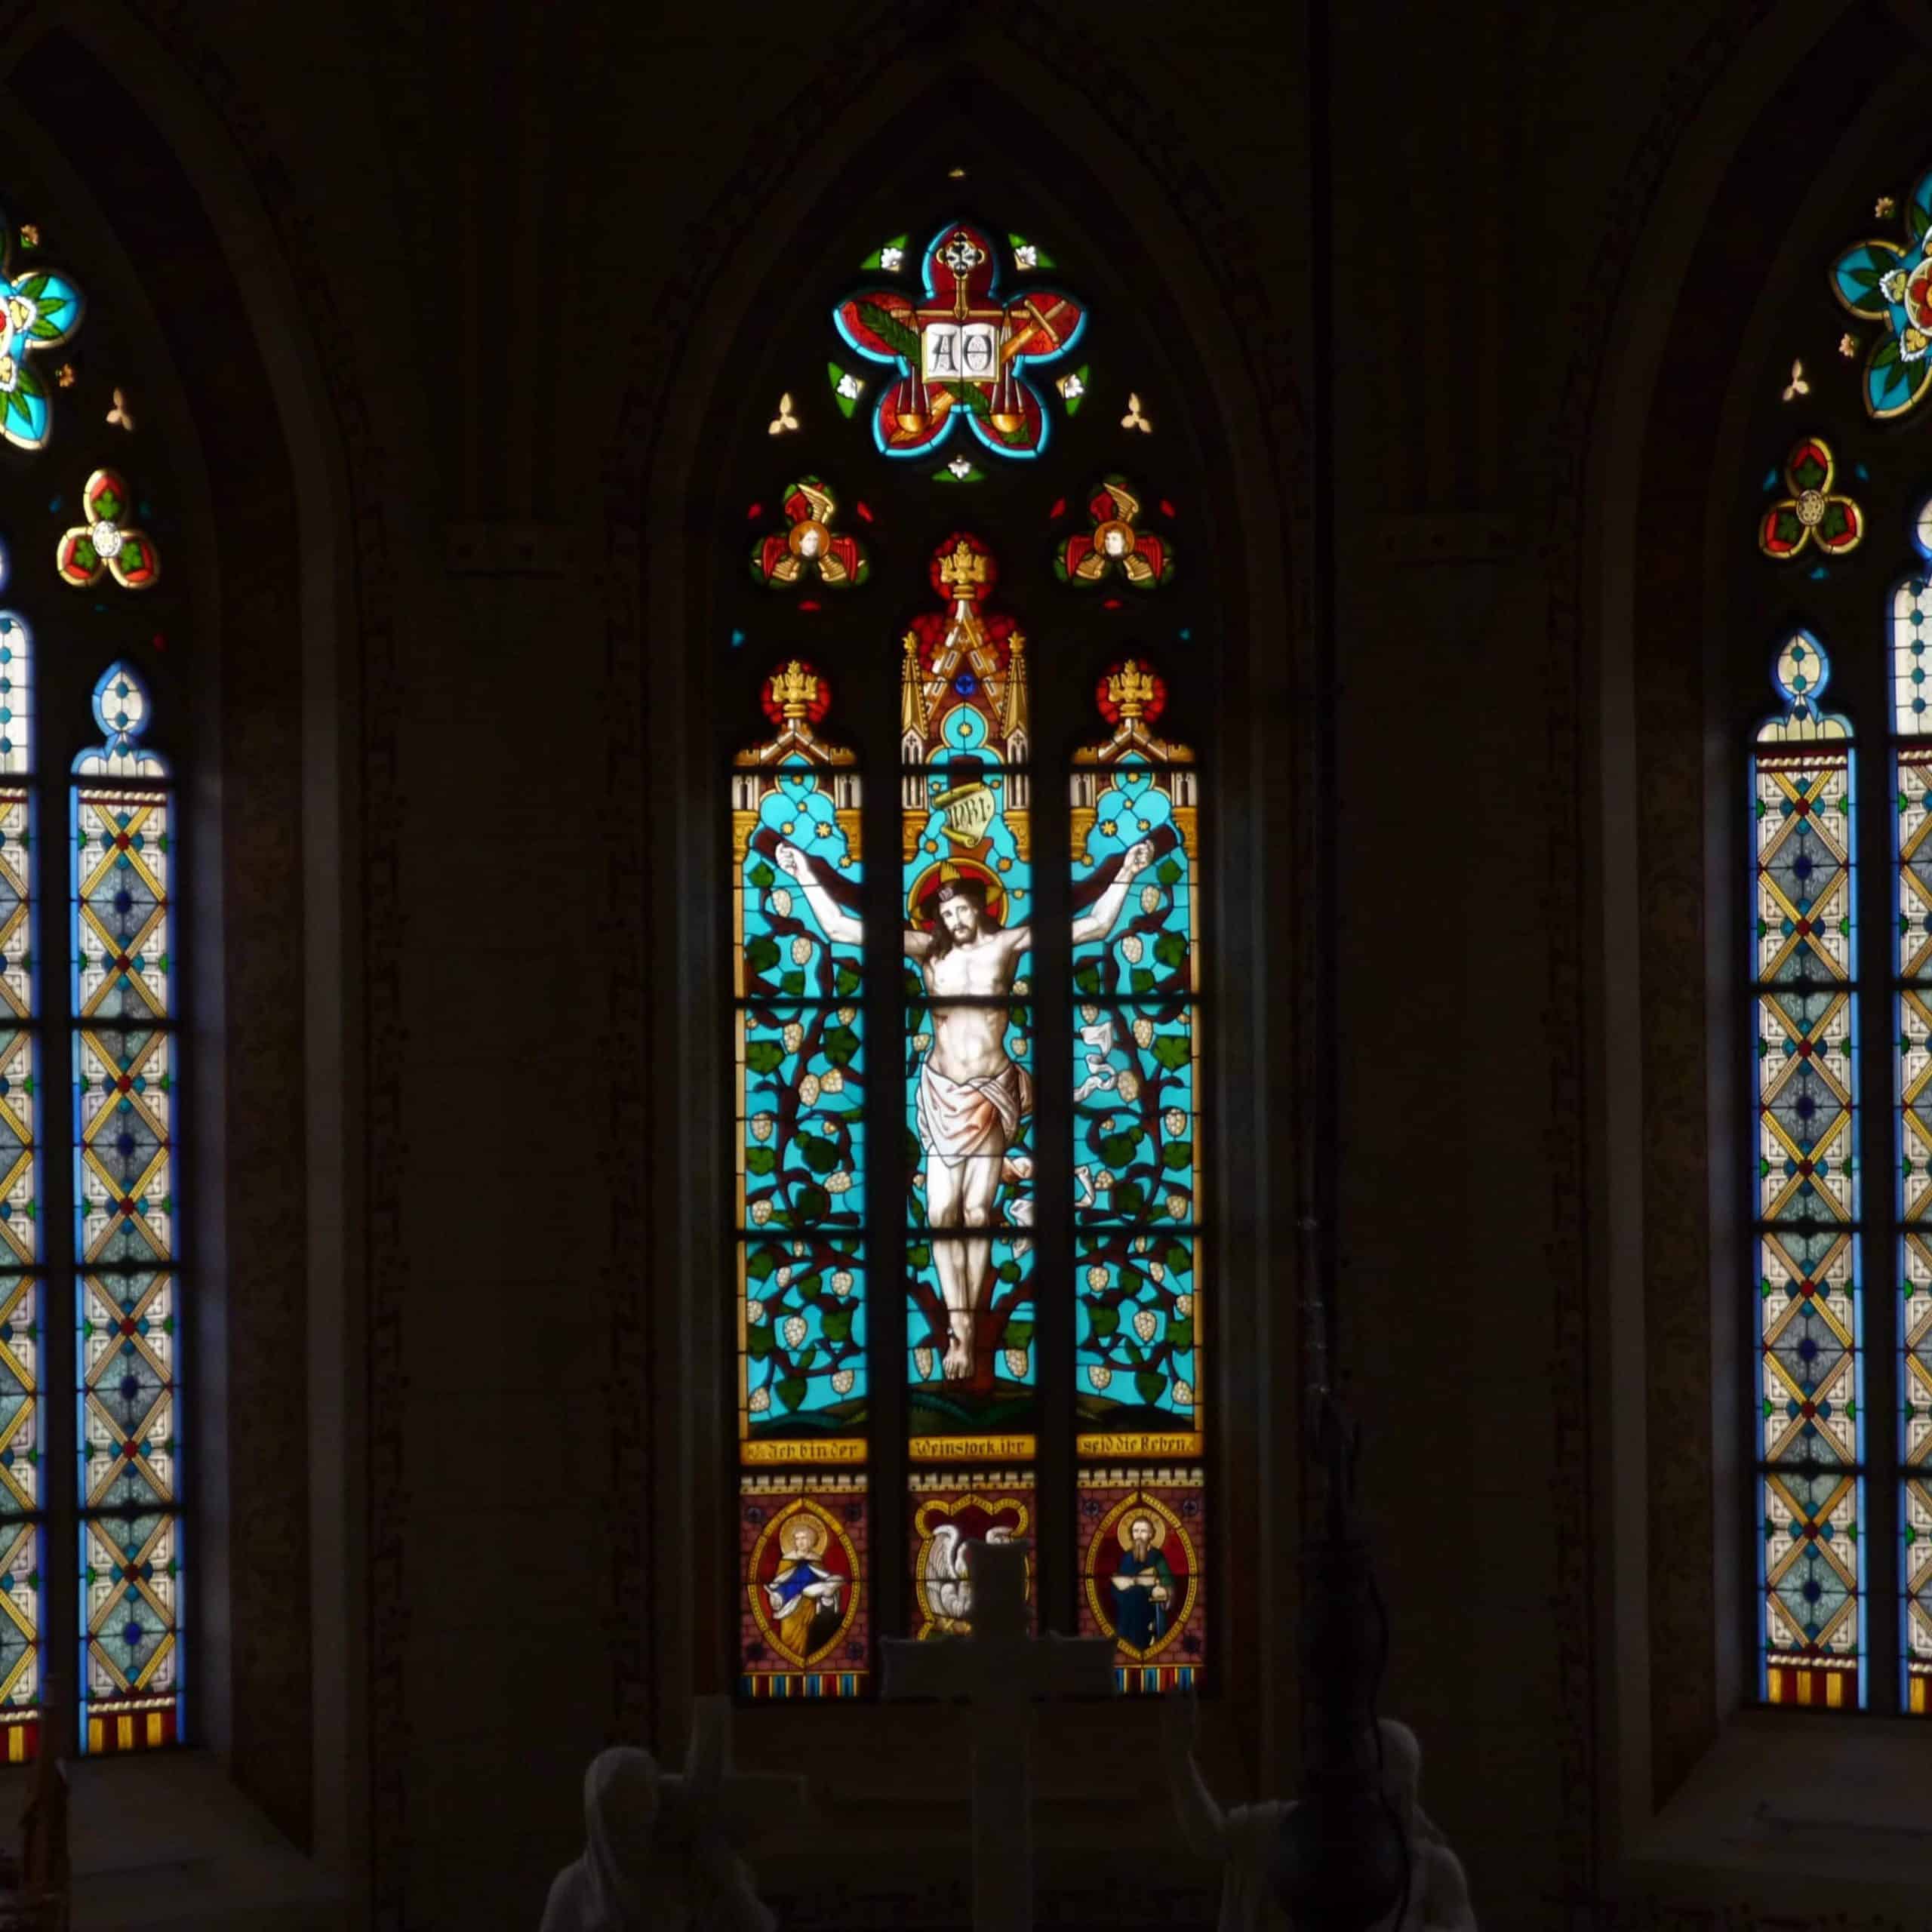 Farbenprächtiges Kirchenfenster mit Darstellung von Jesus und ornamentalen Mustern in einer stilvollen Kirche.